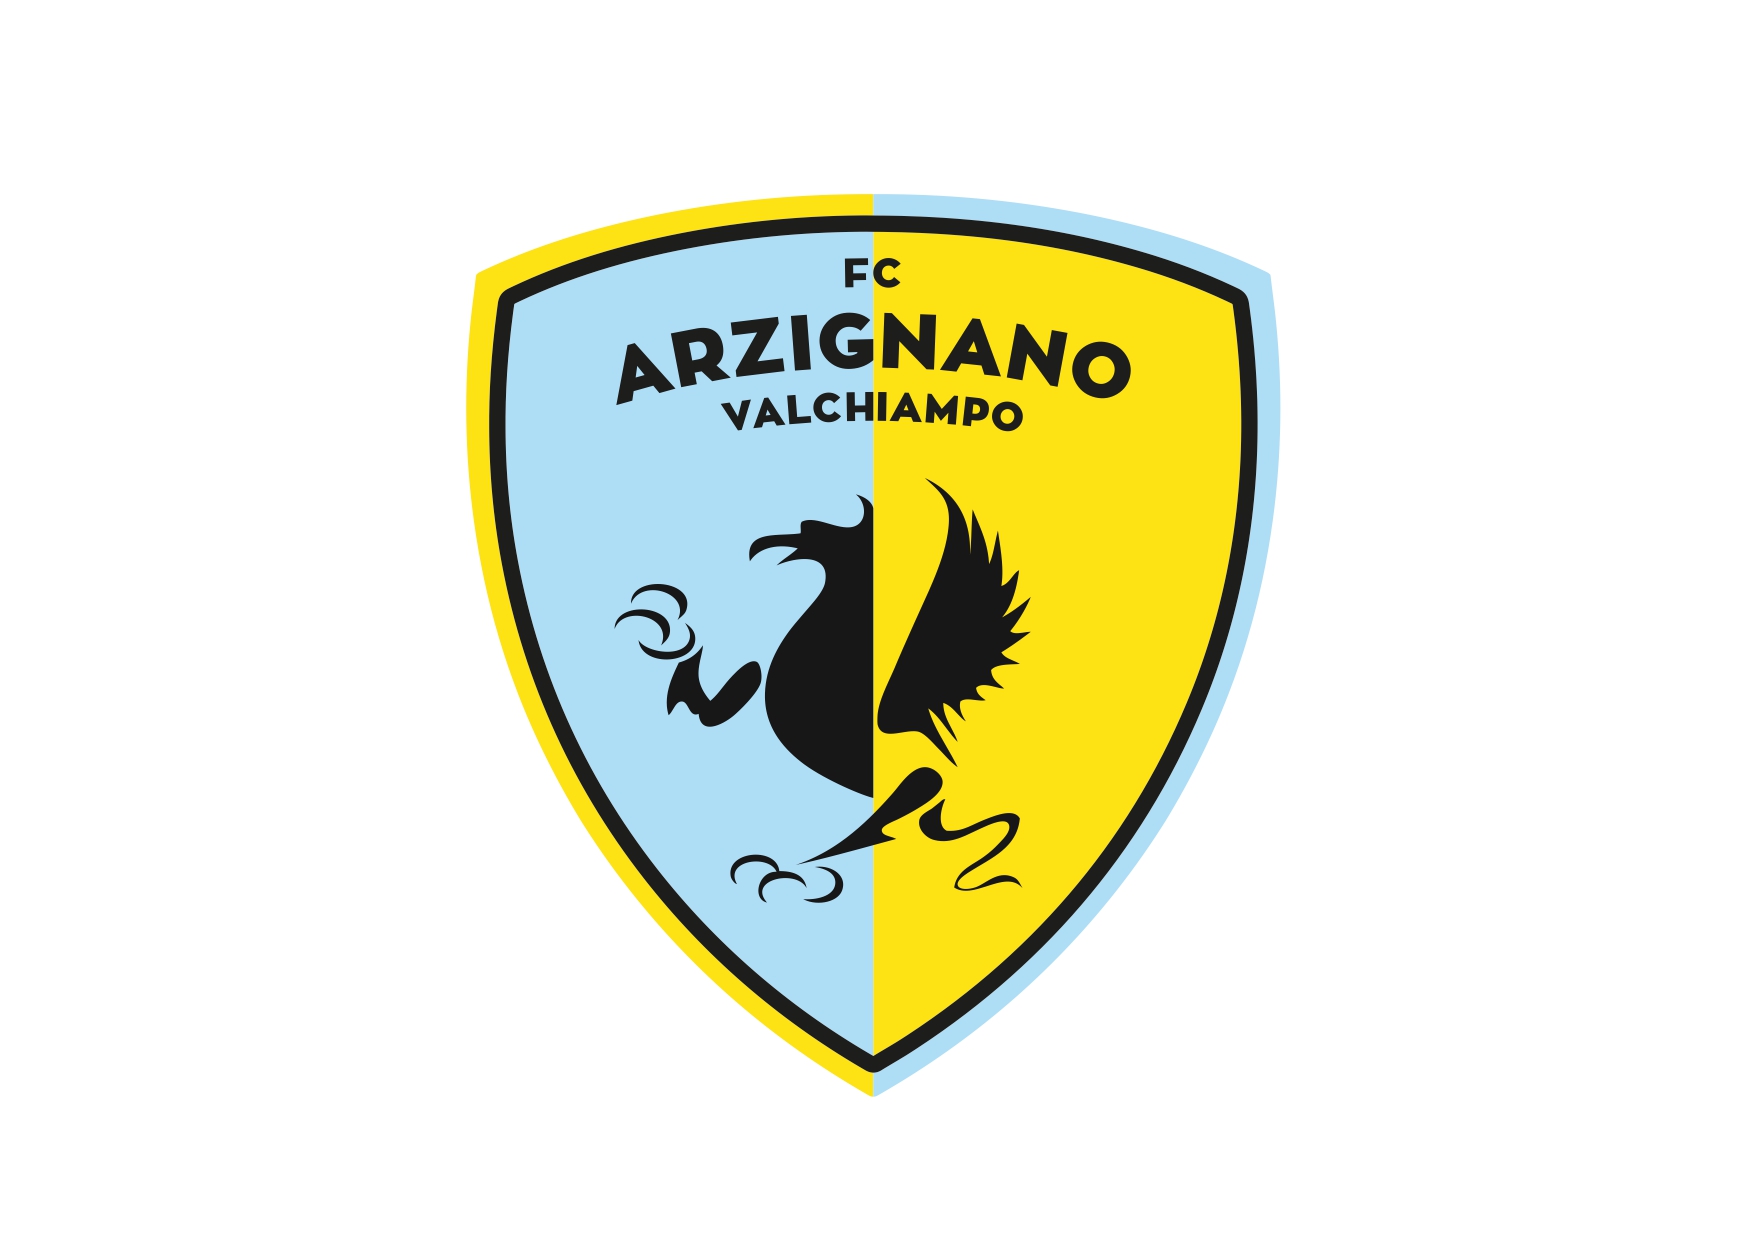 L’avversario di turno: FC Arzignano Valchiampo